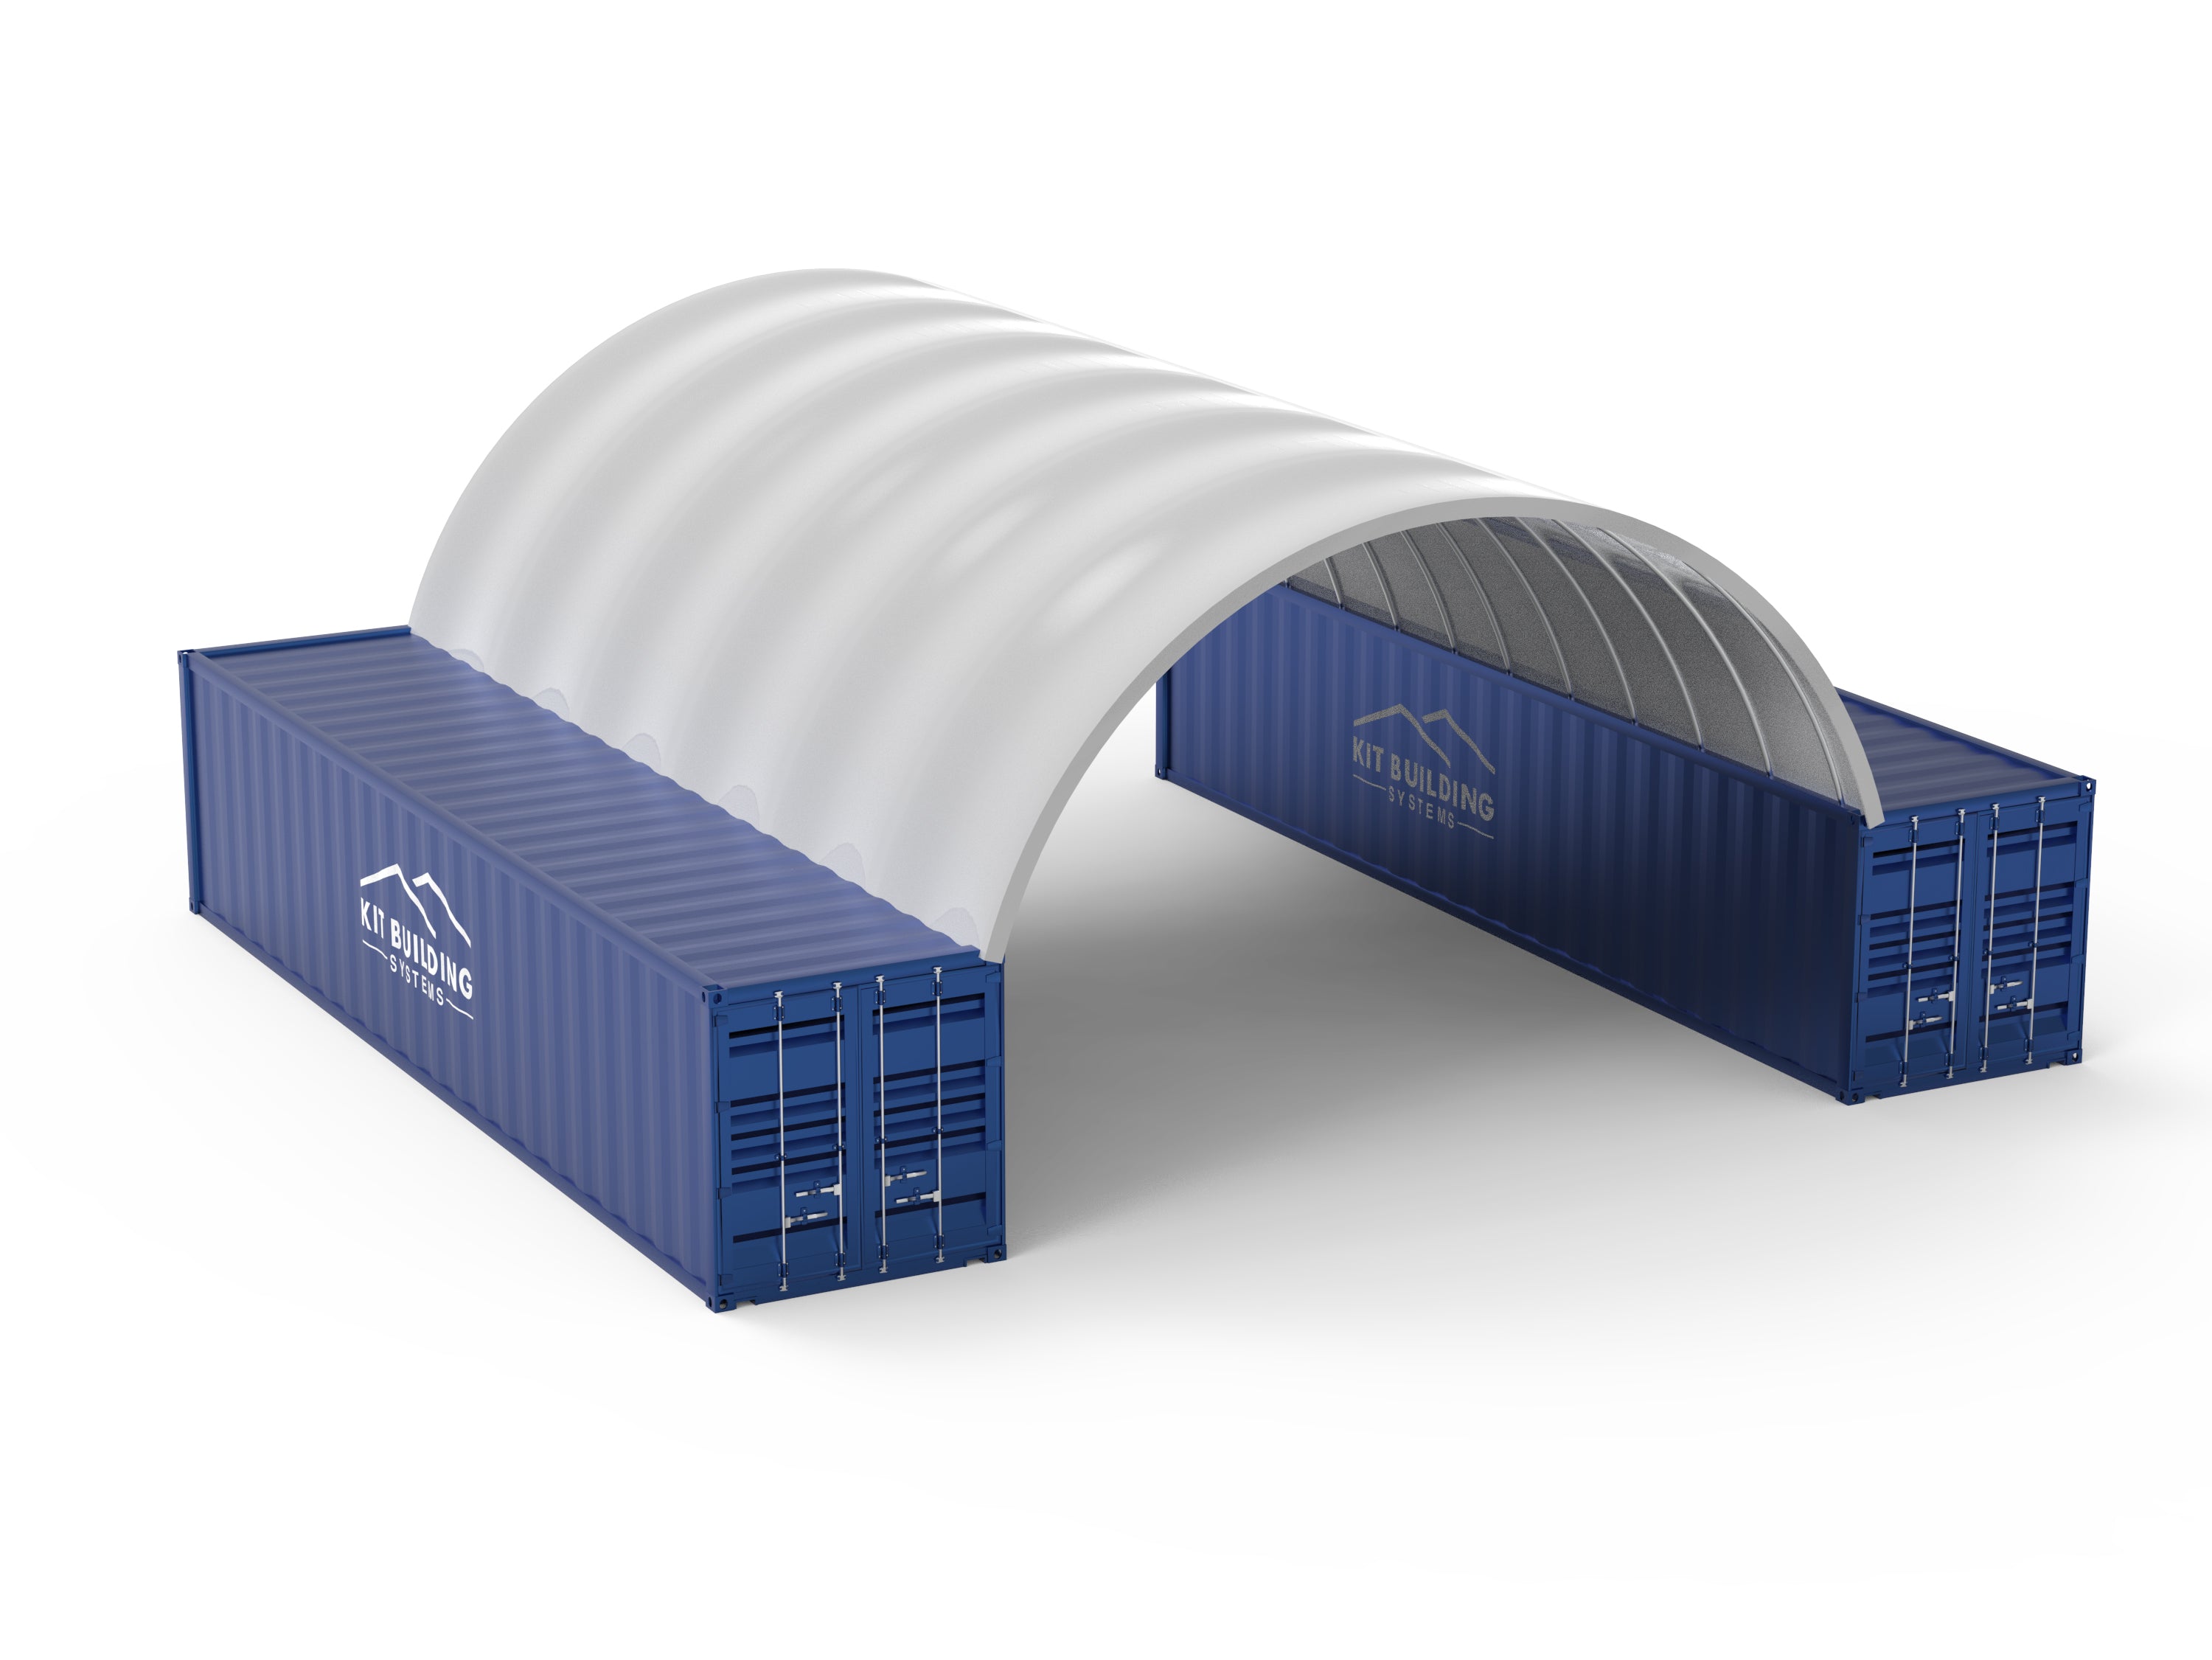 Riparo per container - 26 piedi x 40 piedi x 10 piedi (8 m x 12 m x 3 m)